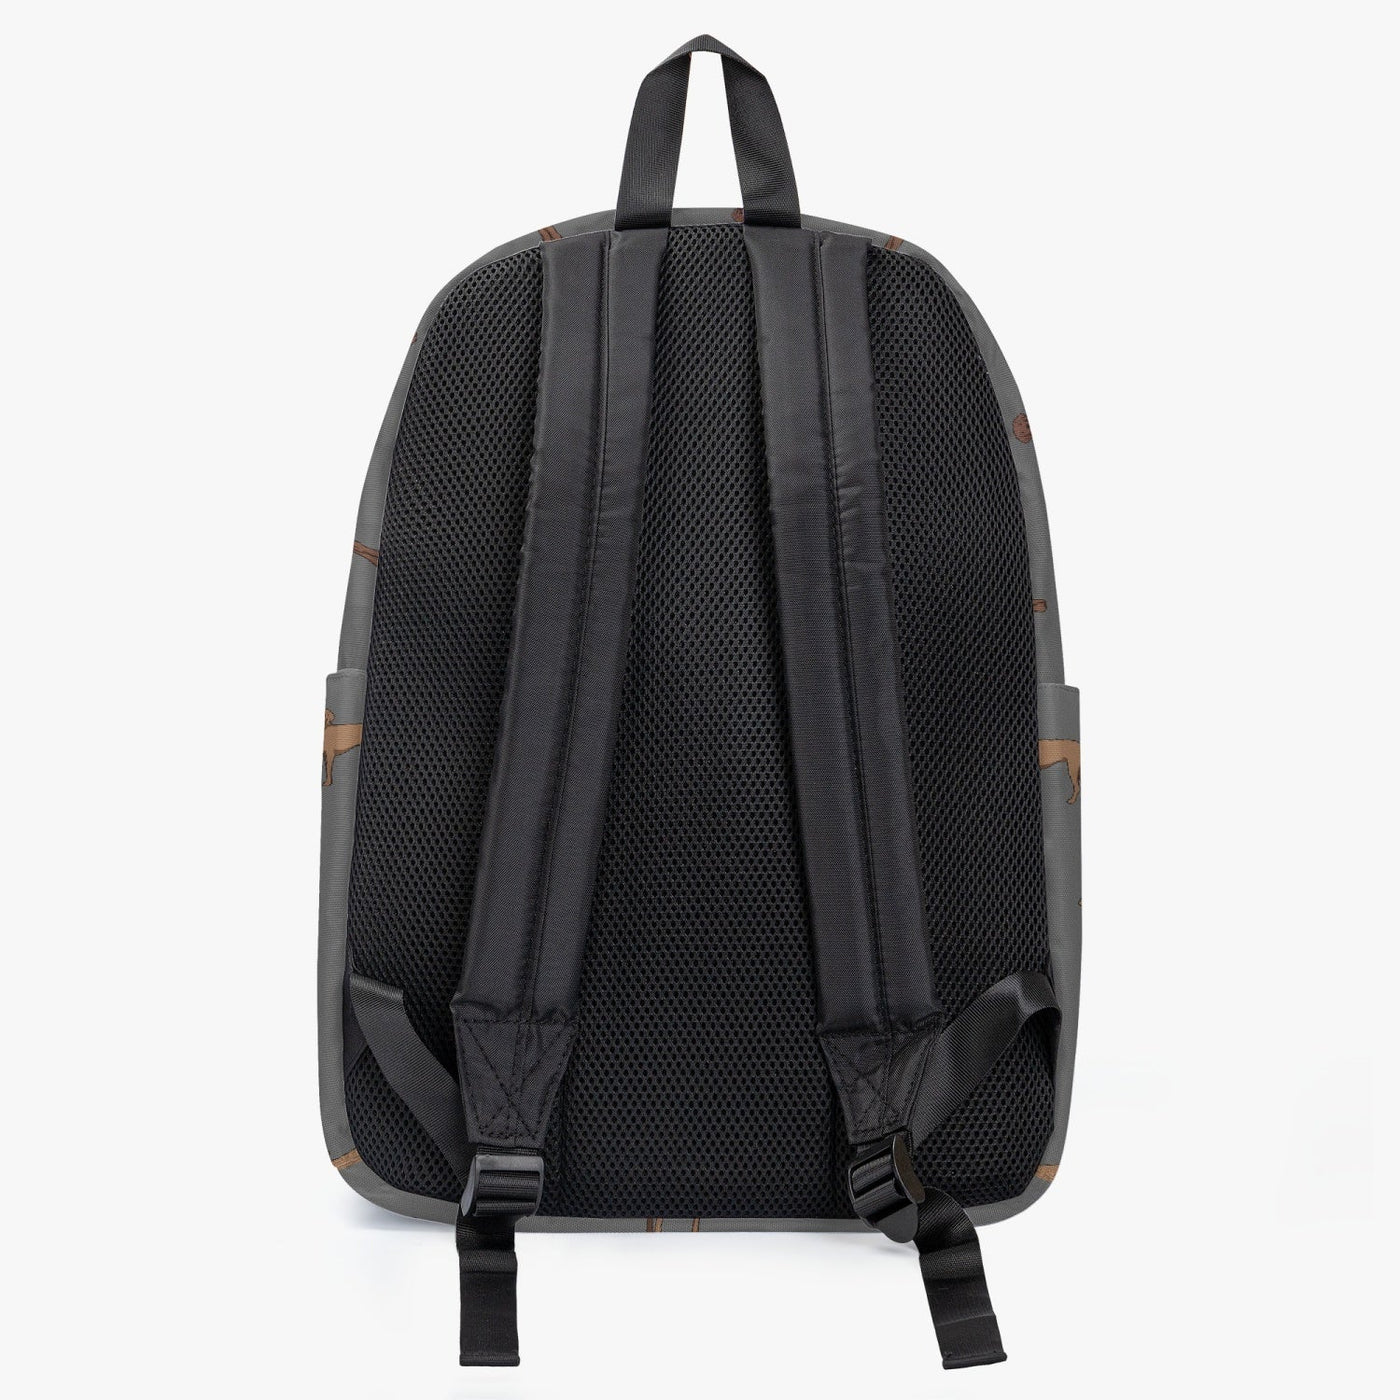 Vizslas - Backpack